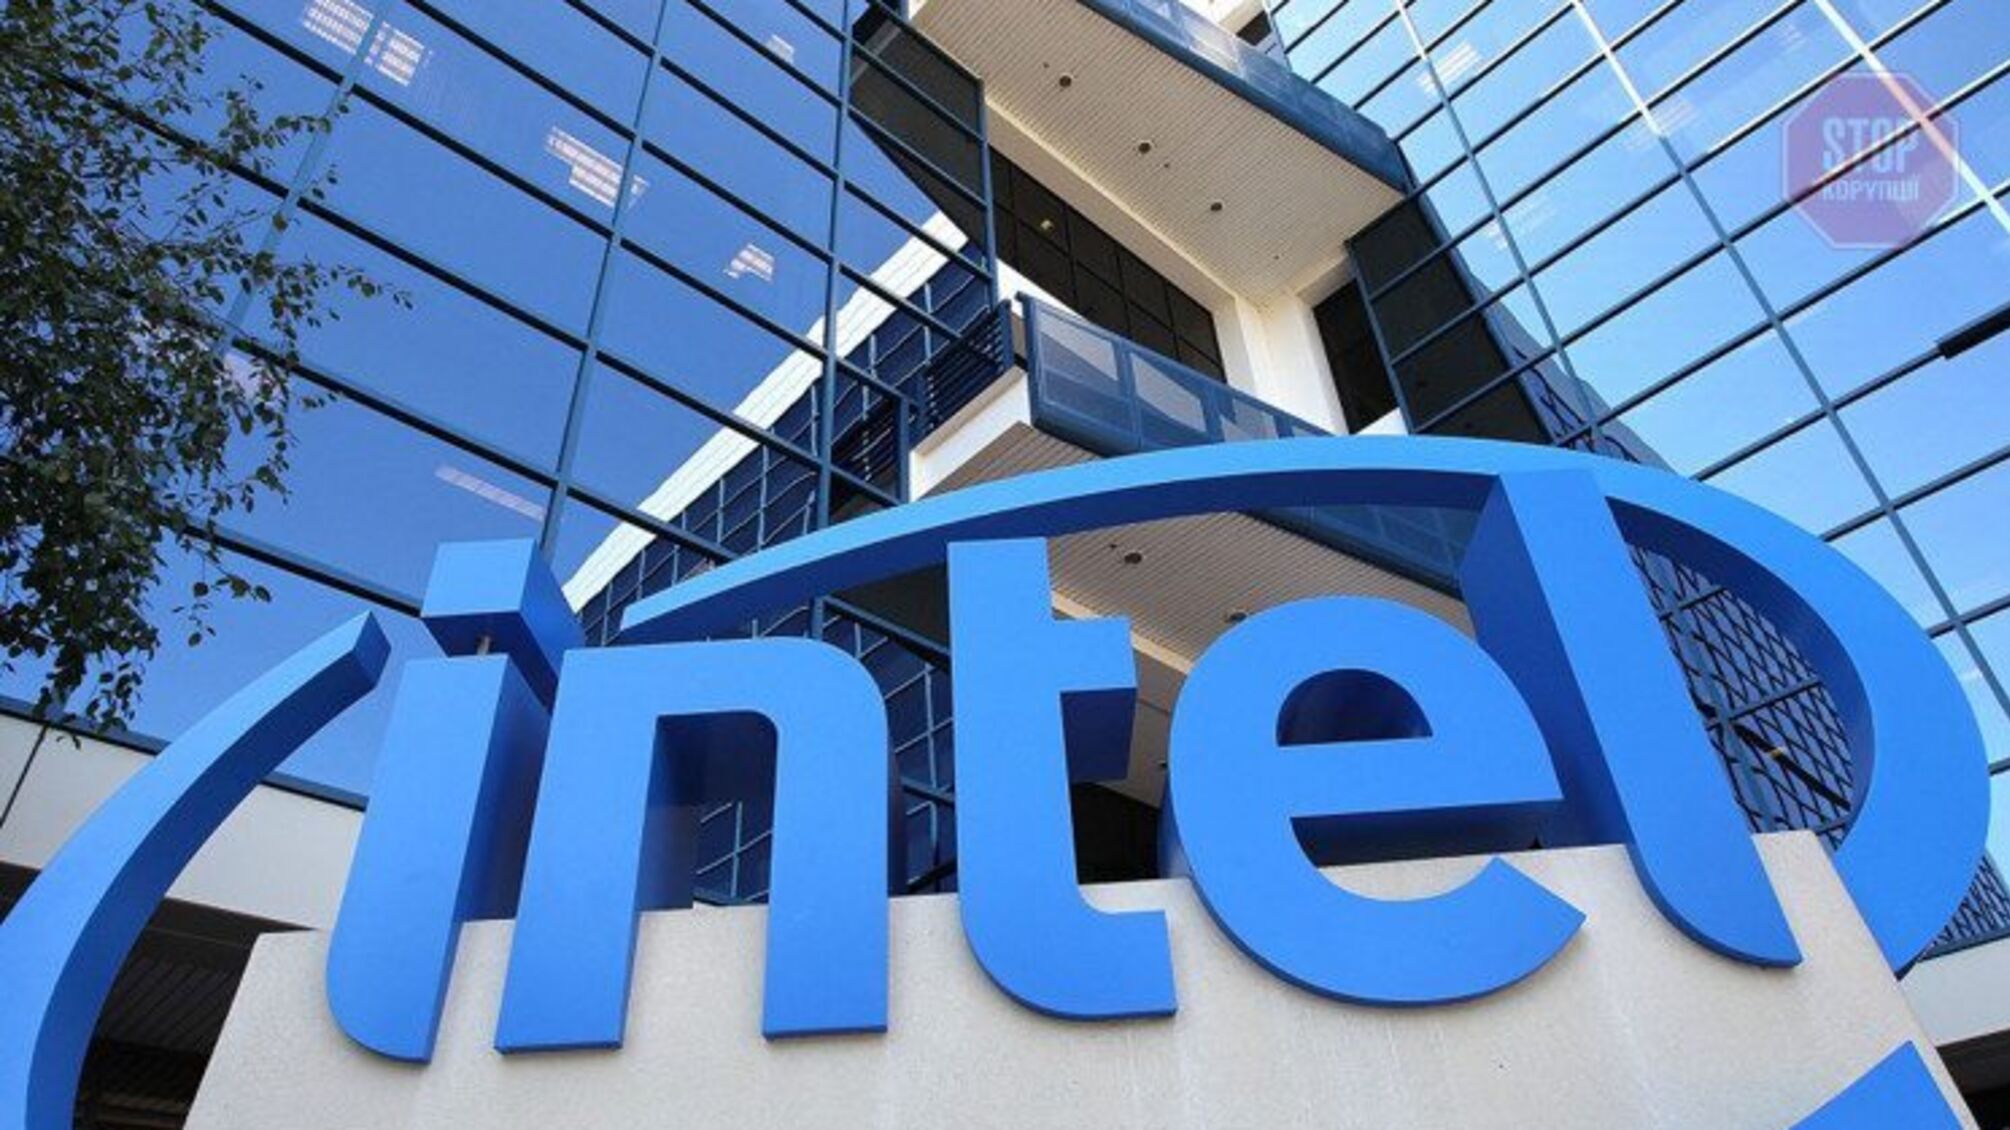 Корпорація Intel зупиняє поставки в Росію та Білорусь